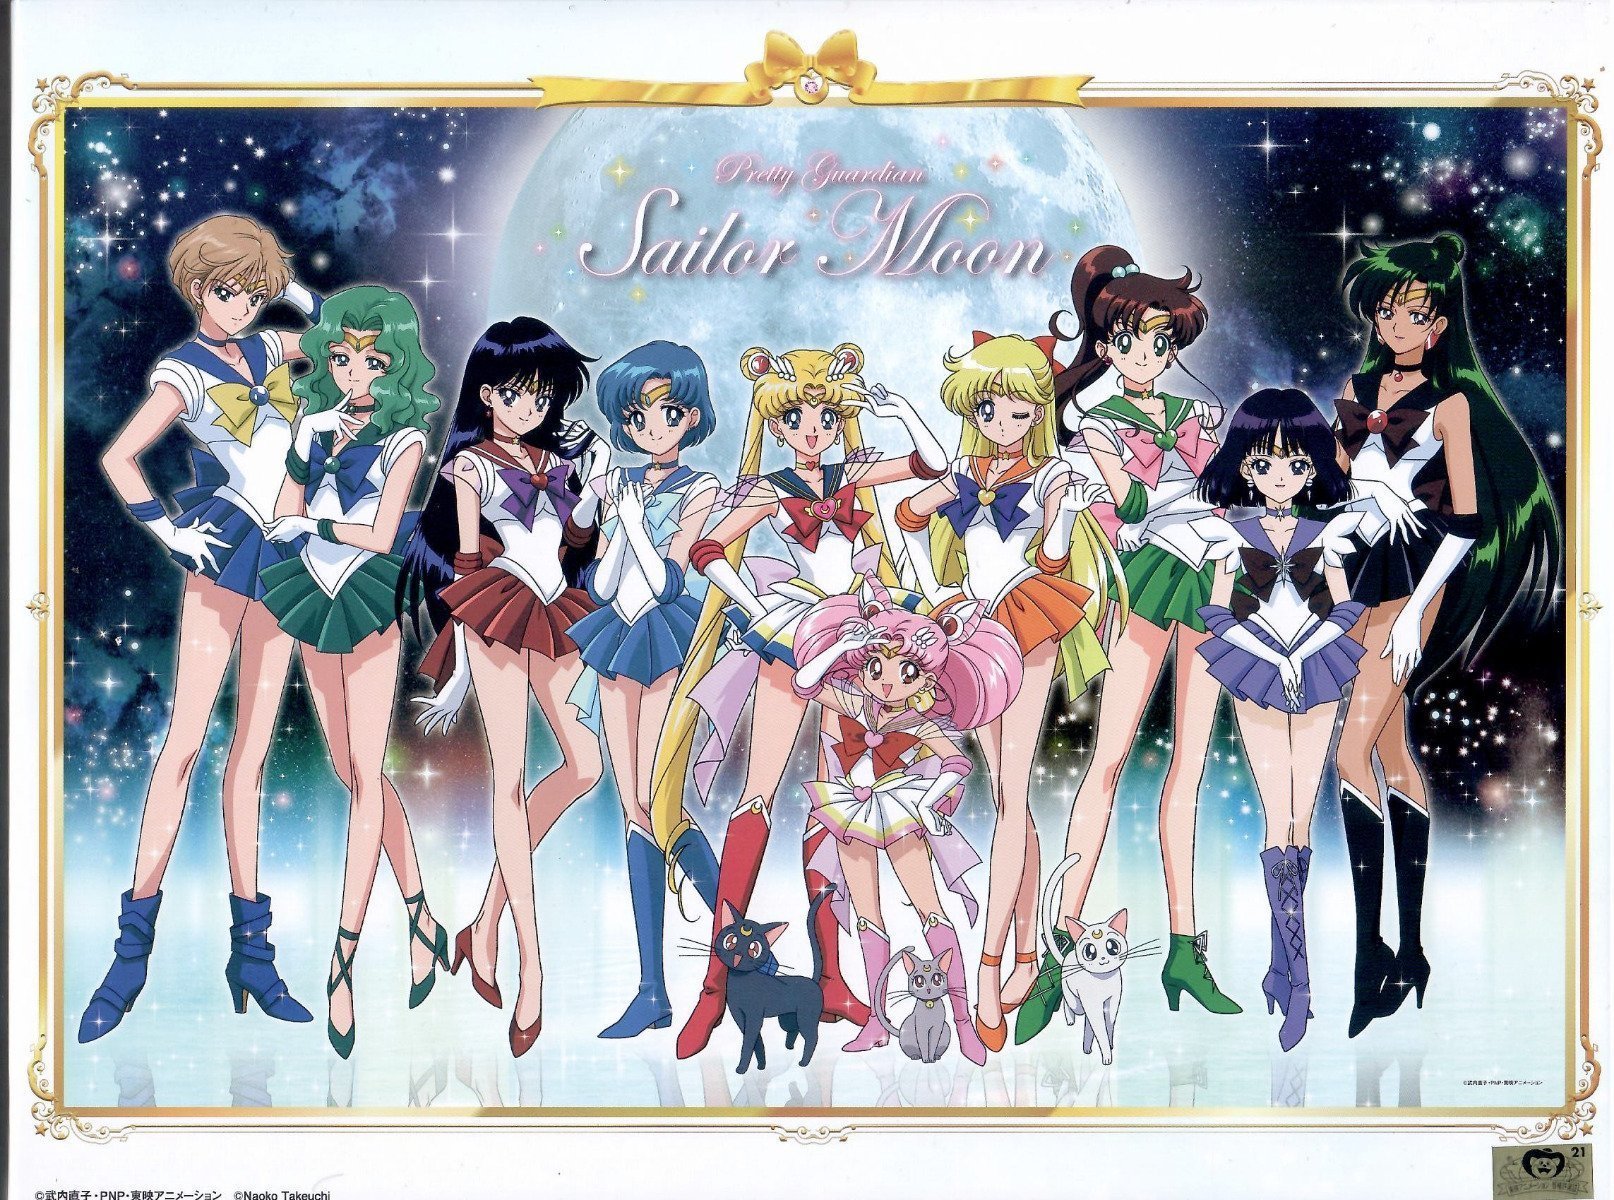 Sailor Moon Sailor Scouts Jigsaw Puzzle 1000 pcs Ensky